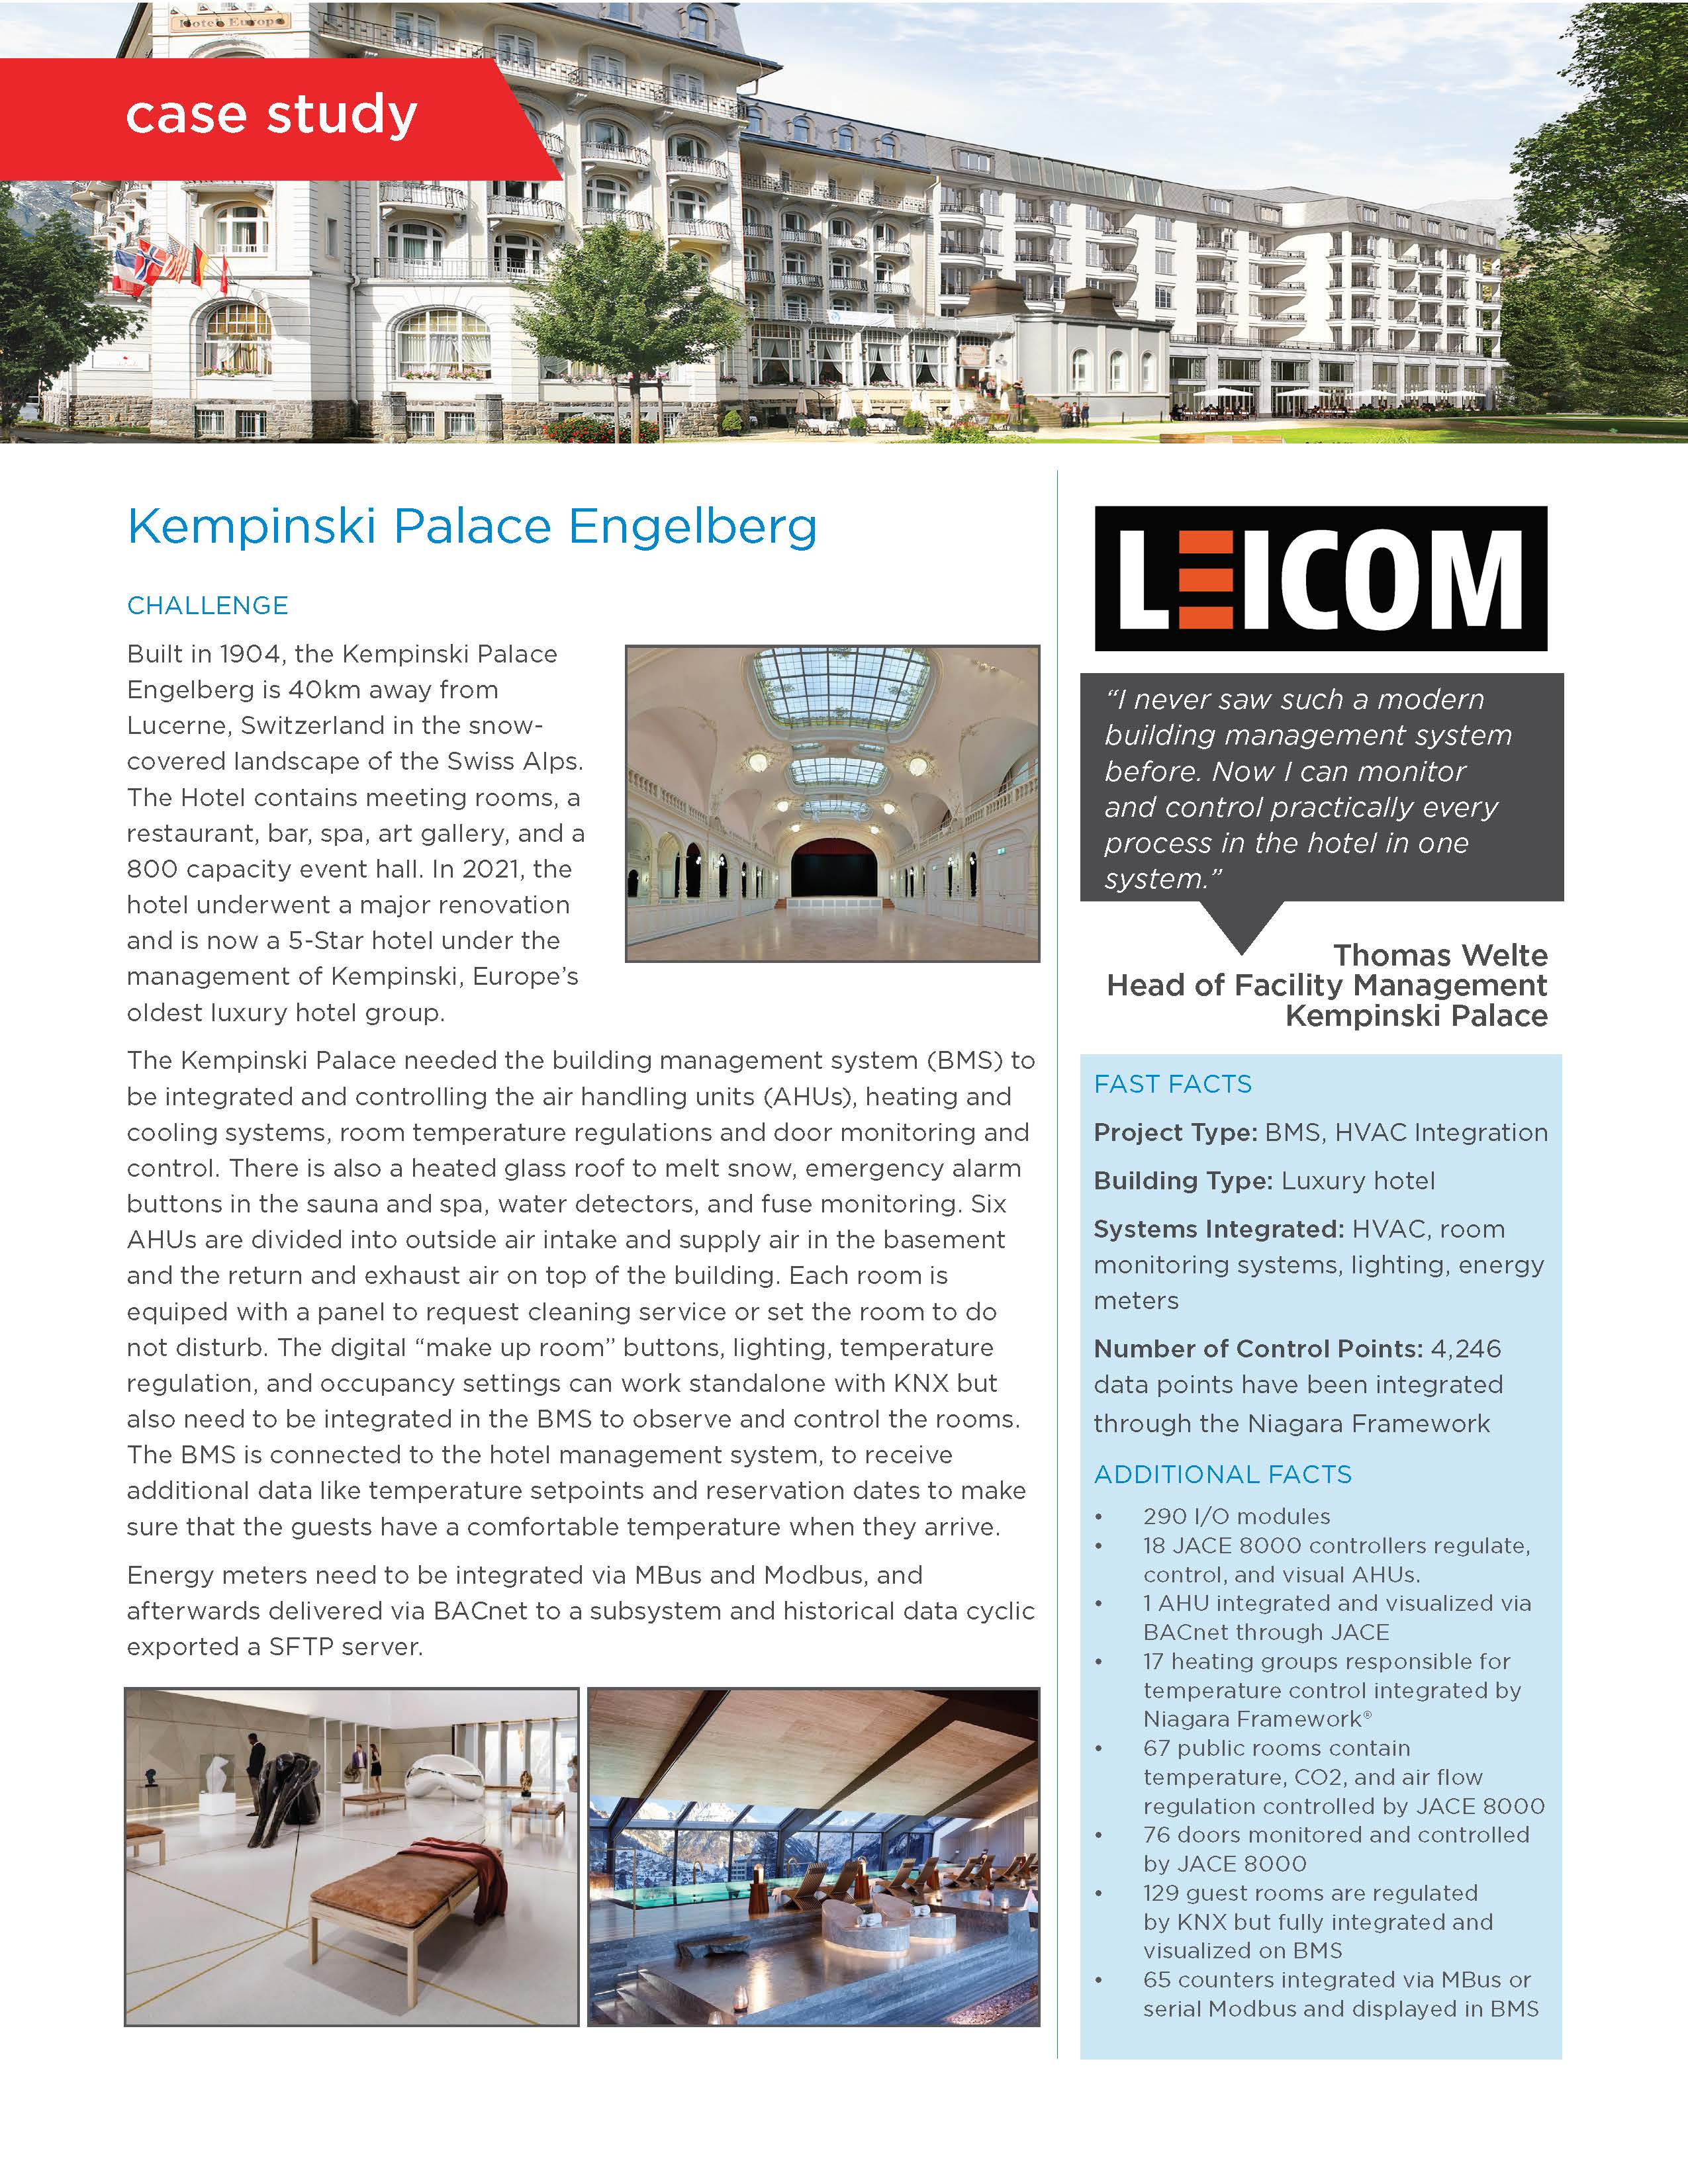 Kempinski Palace Case Study